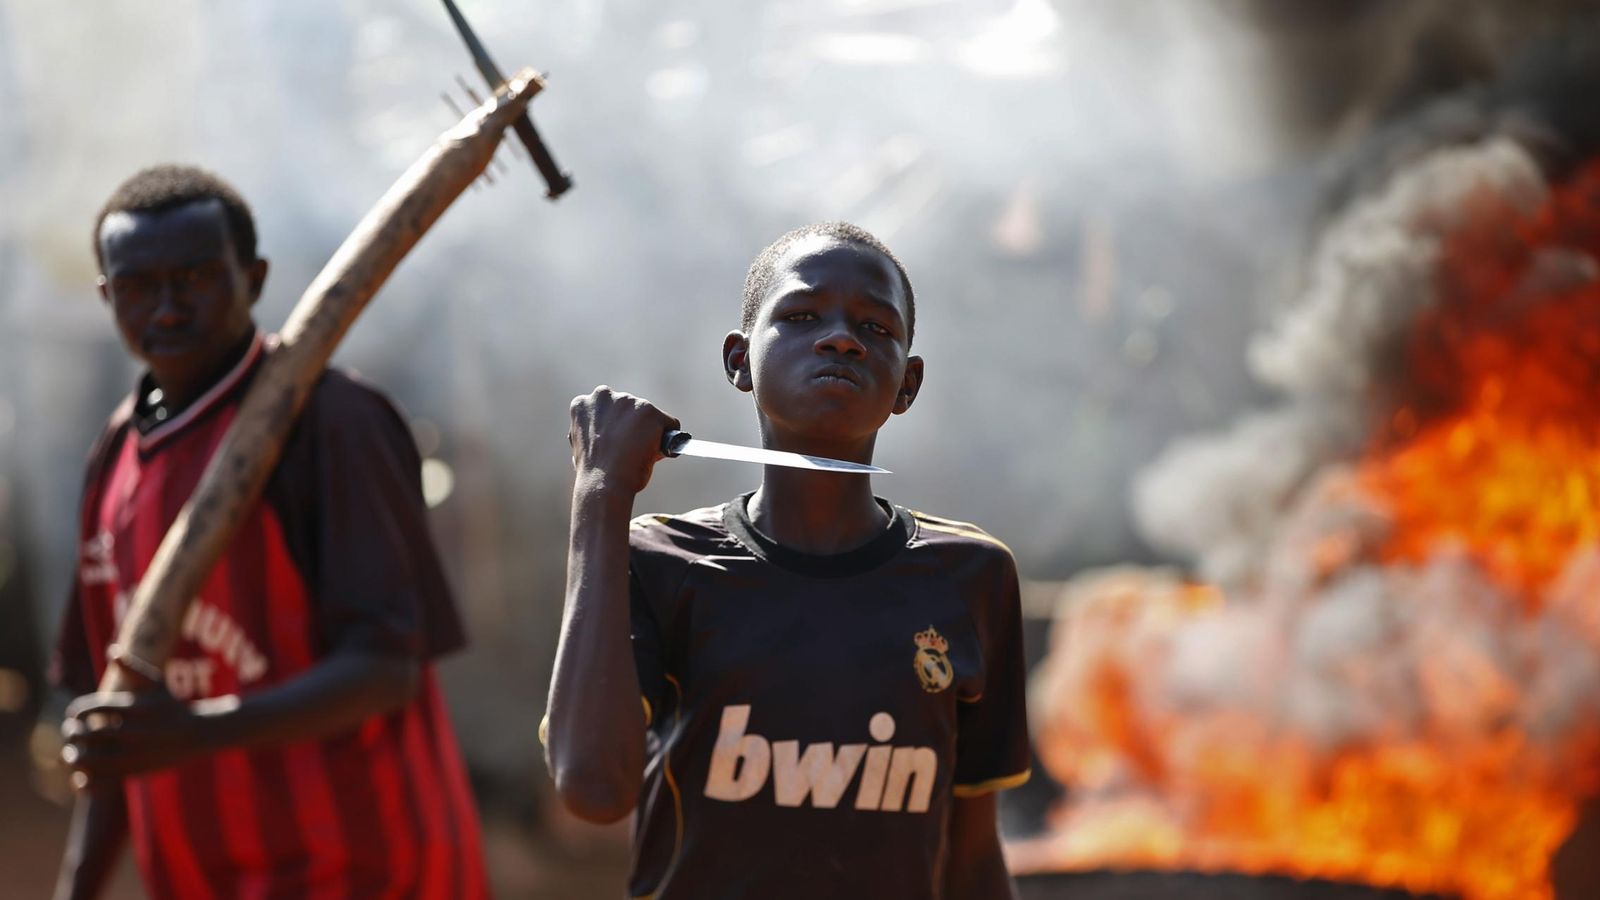 Foto: Un joven gesticula ante la cámara durante una protesta después de que tropas francesas abriesen fuego en Bambari (República Centroafricana).